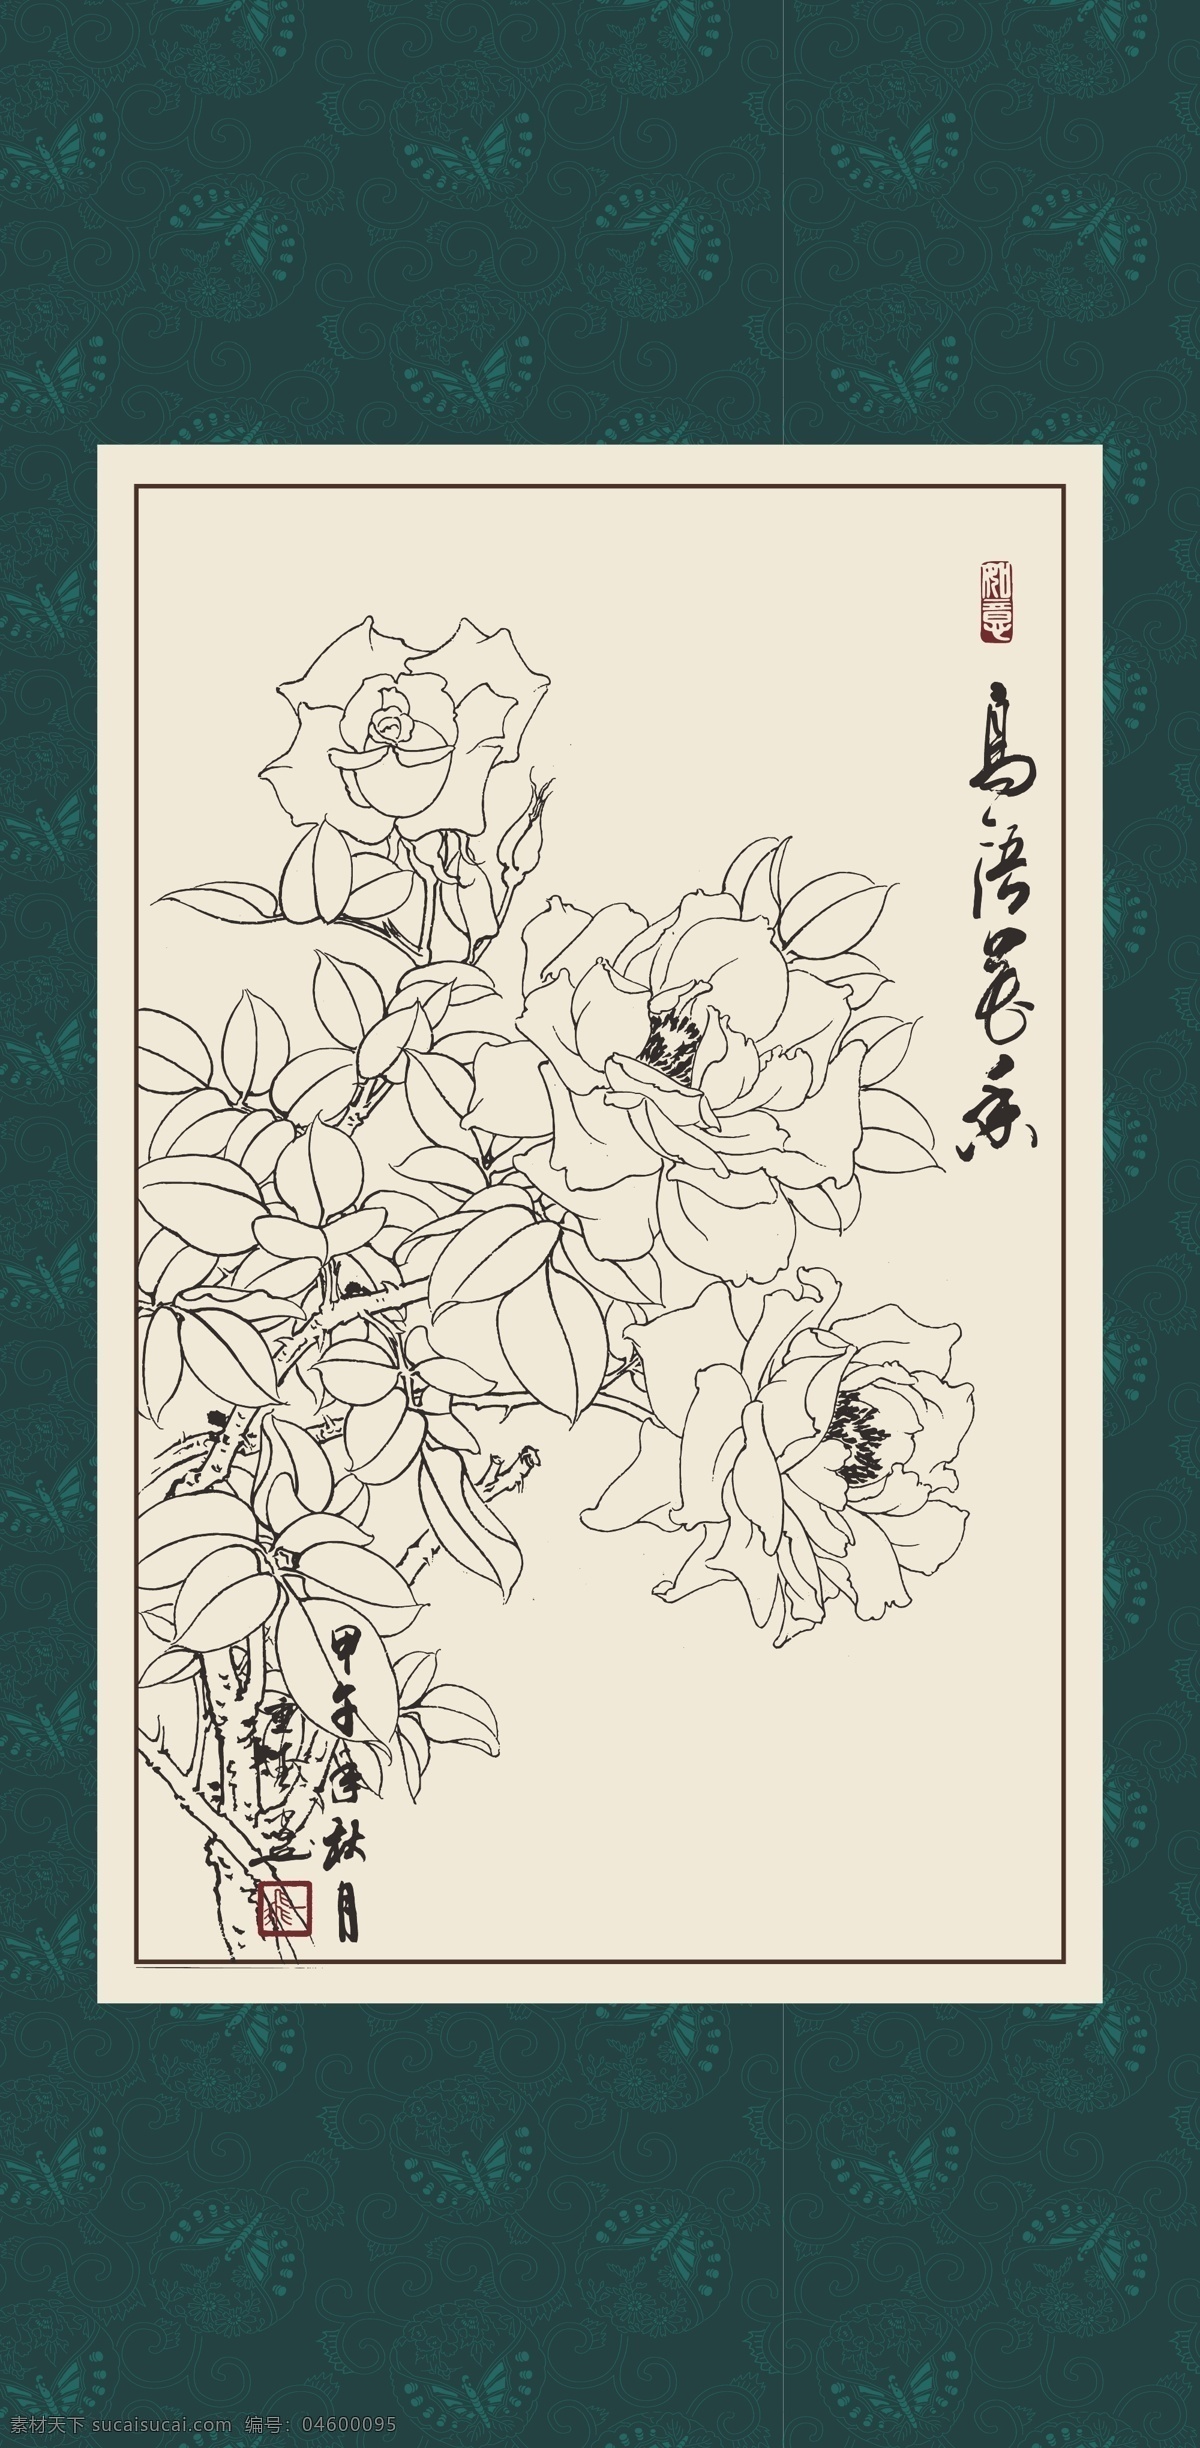 白描 线描 绘画 手绘 国画 印章 植物 花卉 工笔 gx150124 白描月季 玫瑰 文化艺术 绘画书法